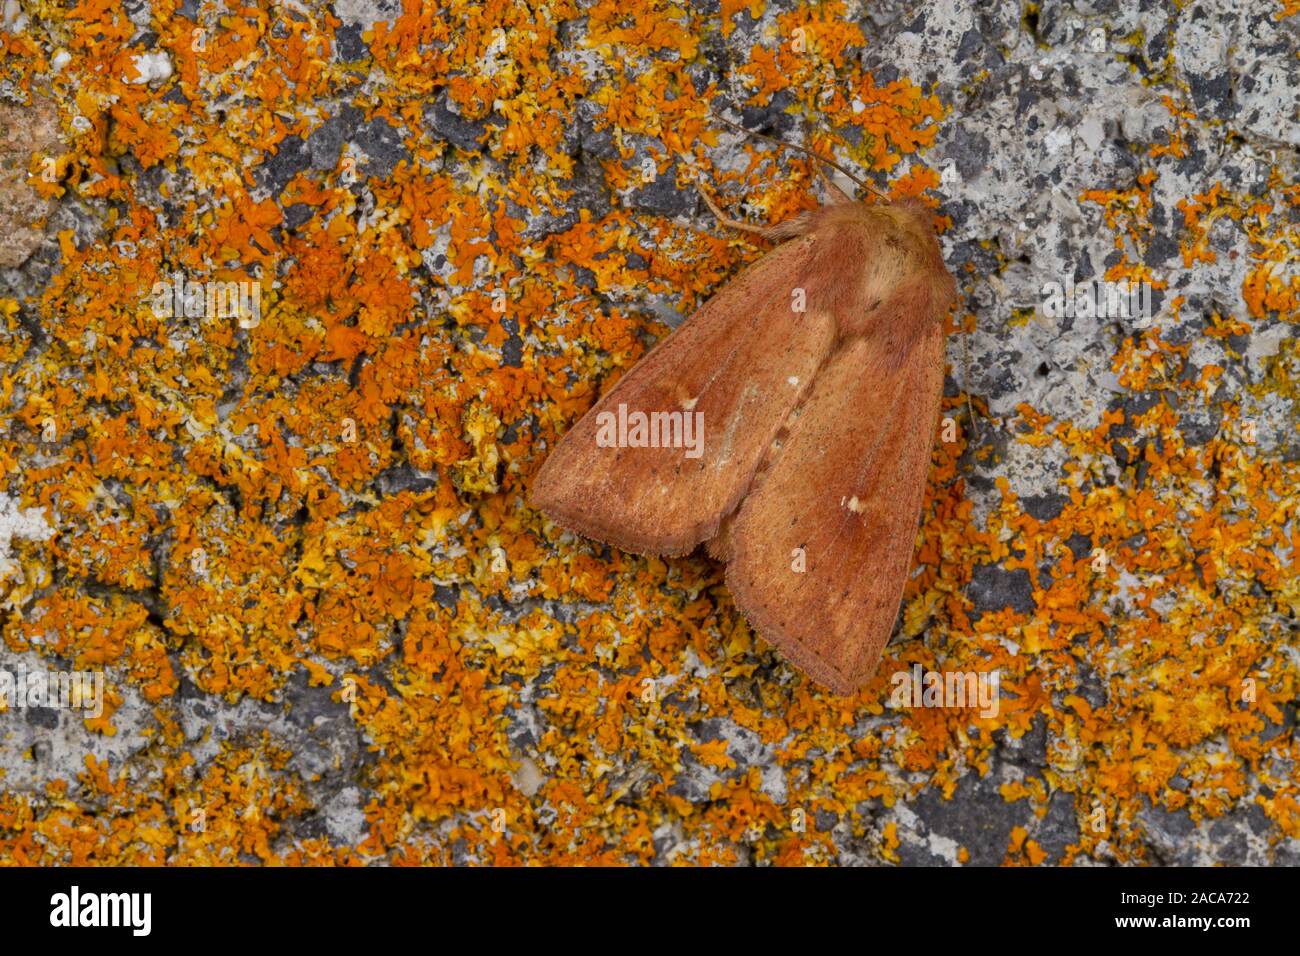 L'argile (Mythimna ferrago) papillon adulte reposant sur les lichens. Powys, Pays de Galles. Juillet. Banque D'Images